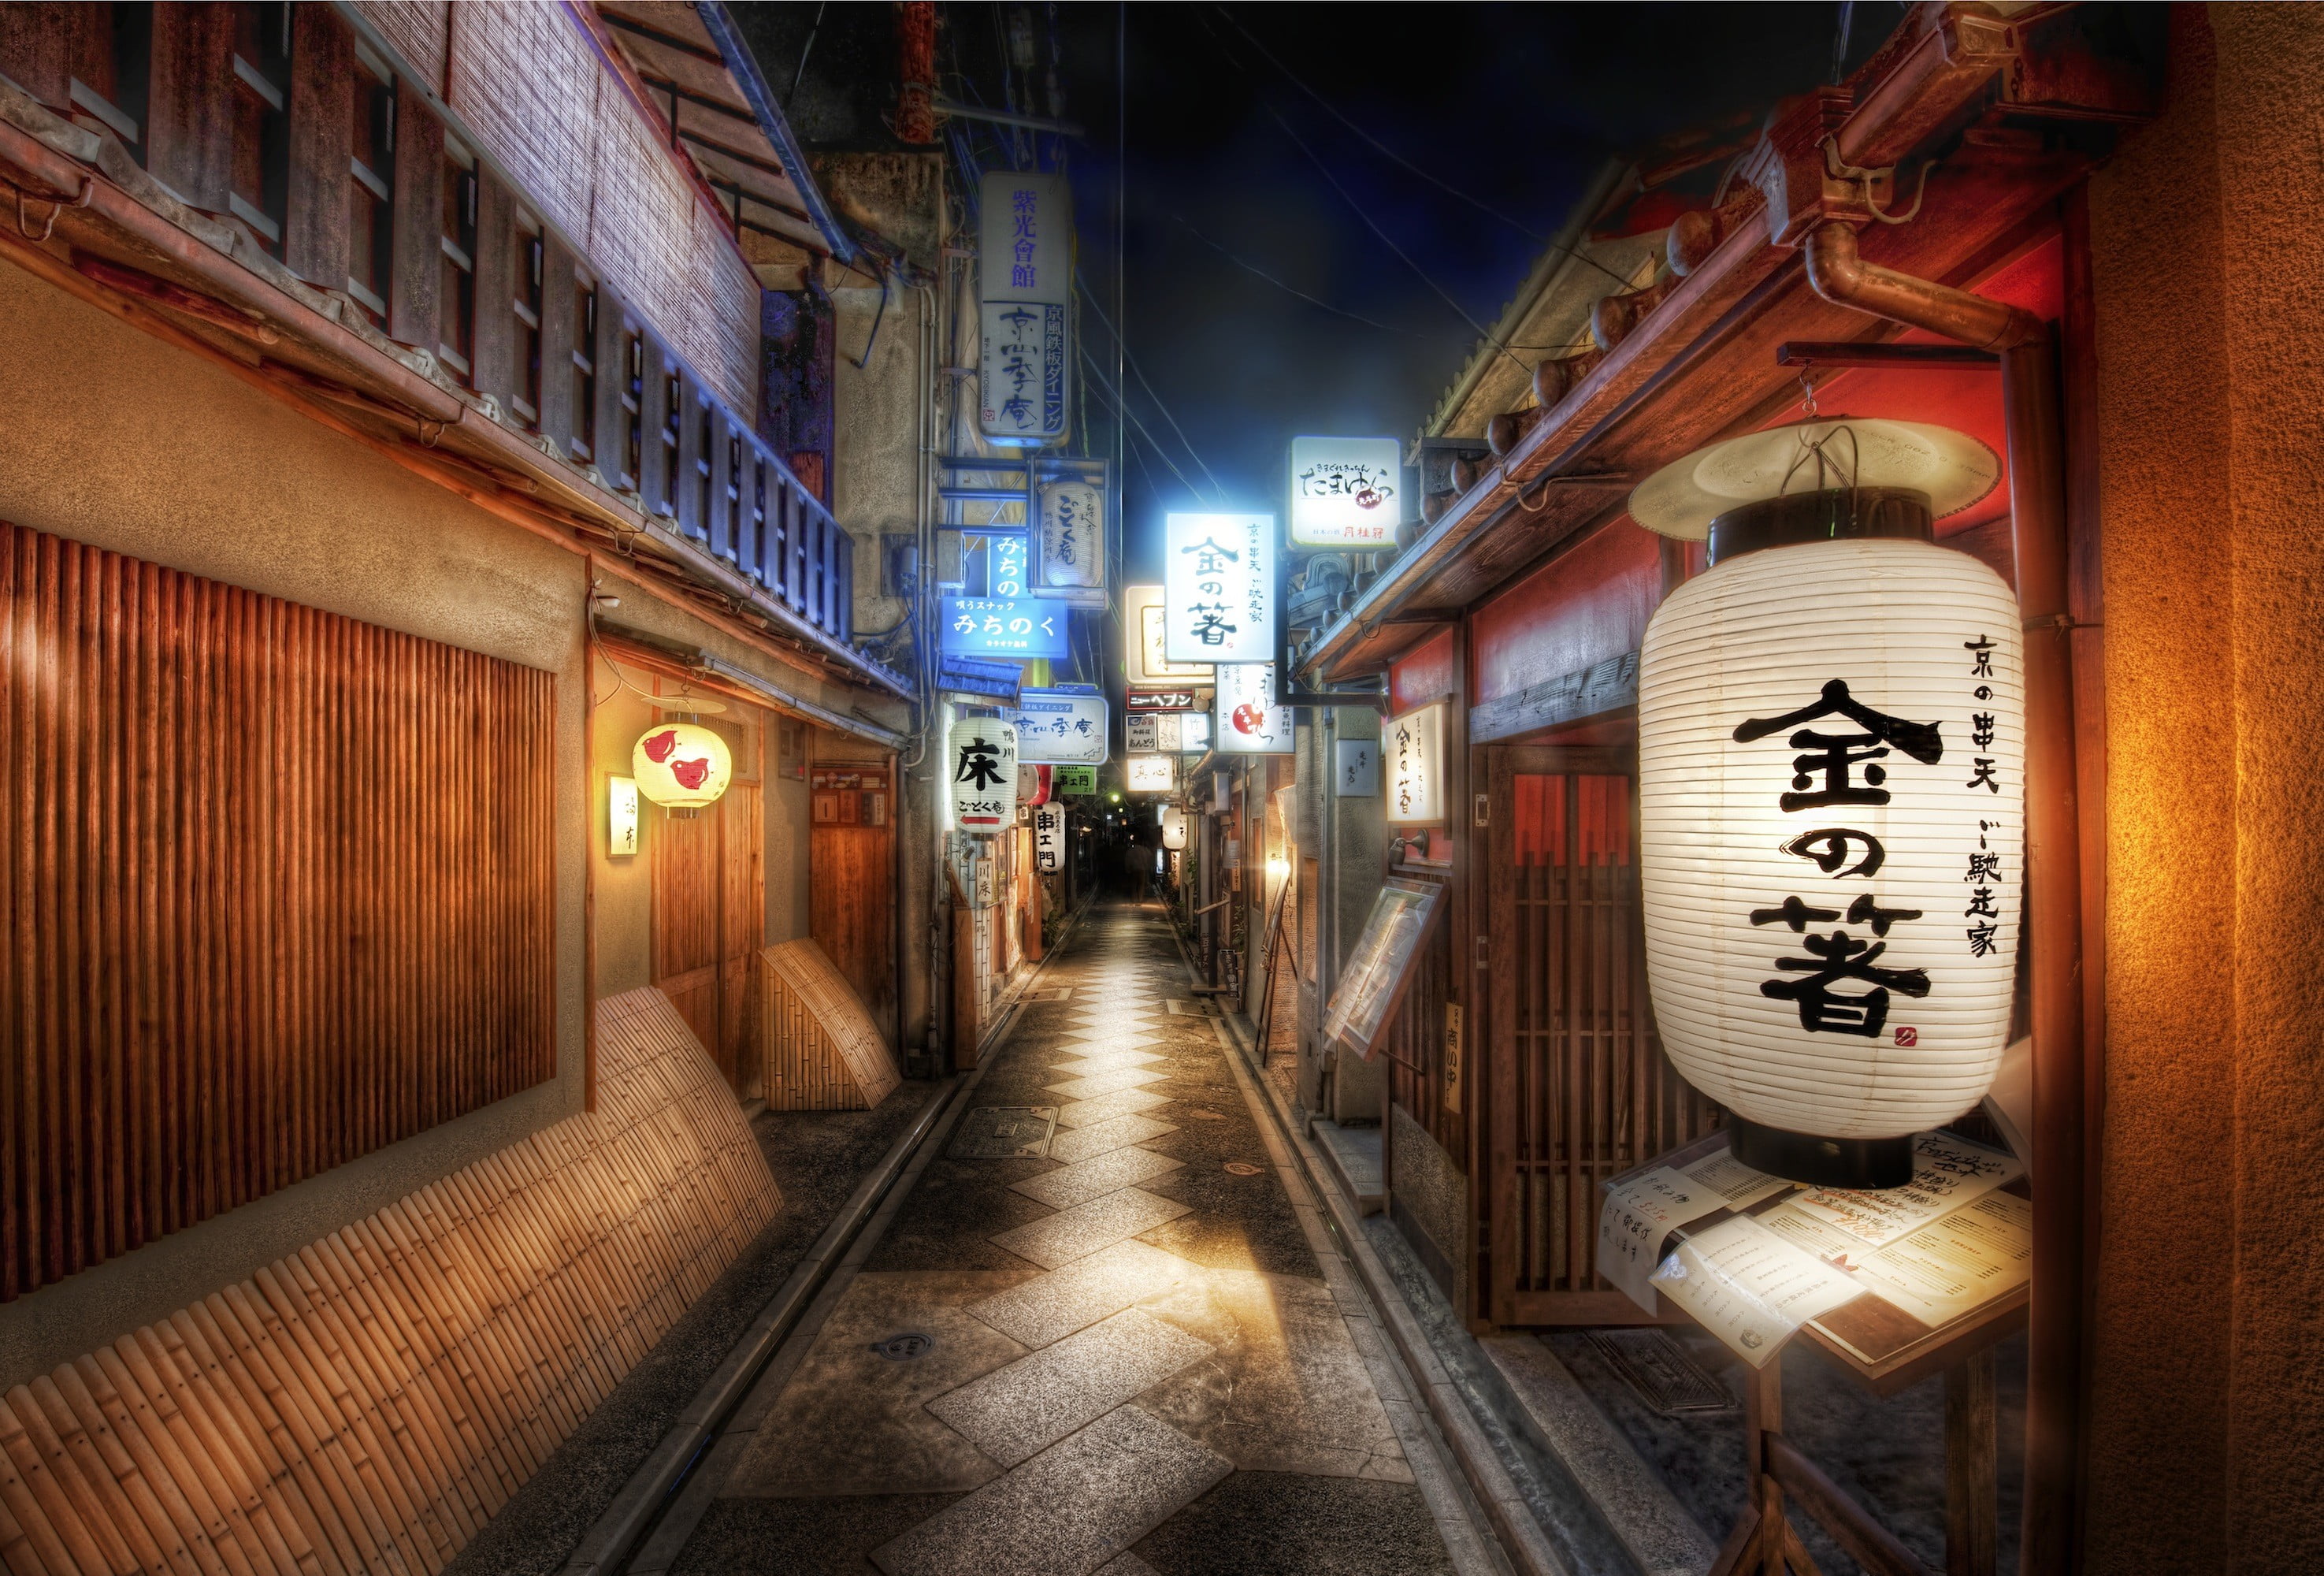 white Chinese lantern, Asia, urban, cityscape, street, architecture